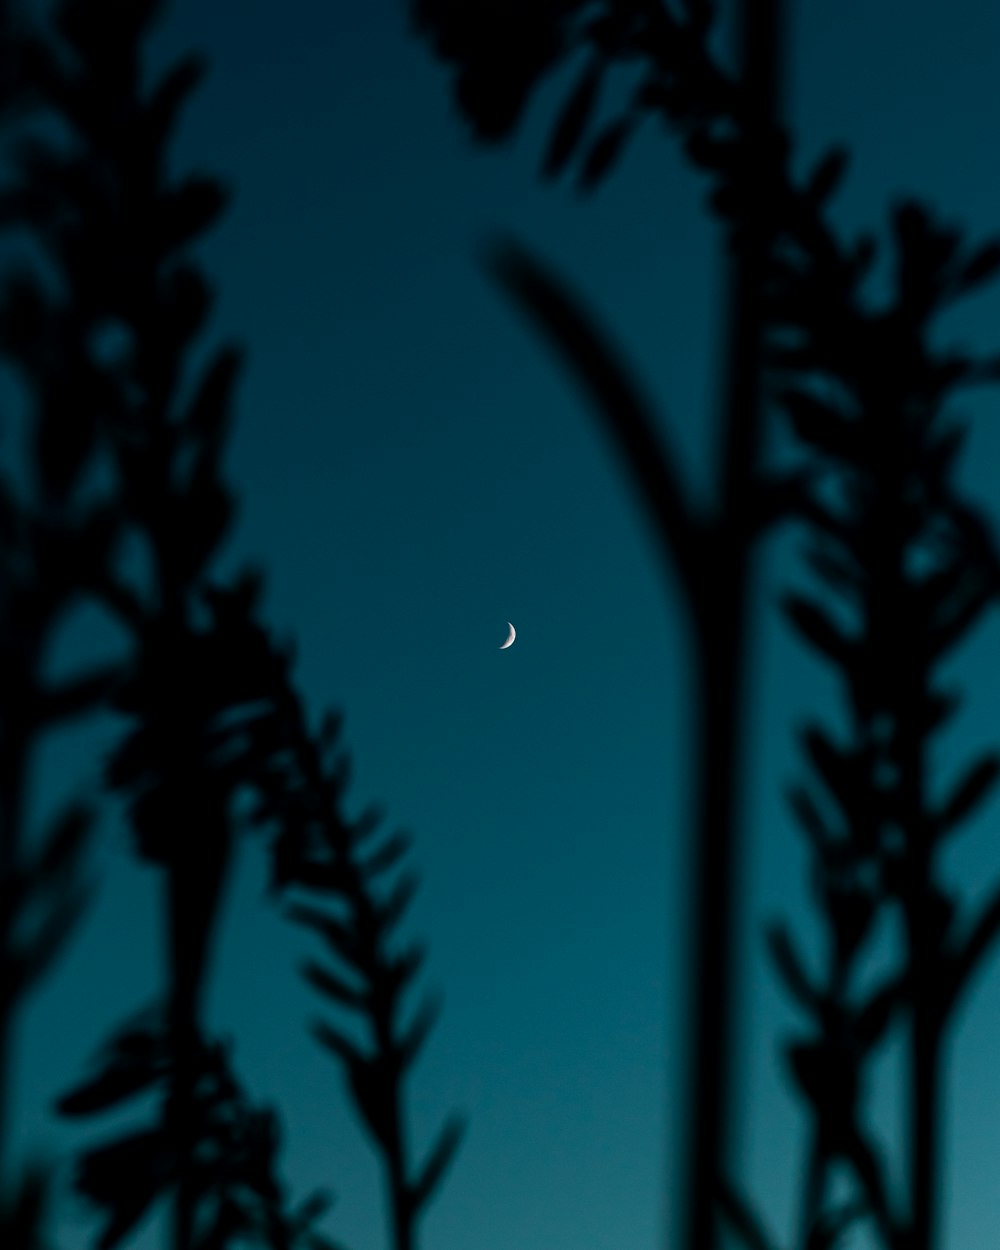 La lune est vue à travers les branches d’un arbre